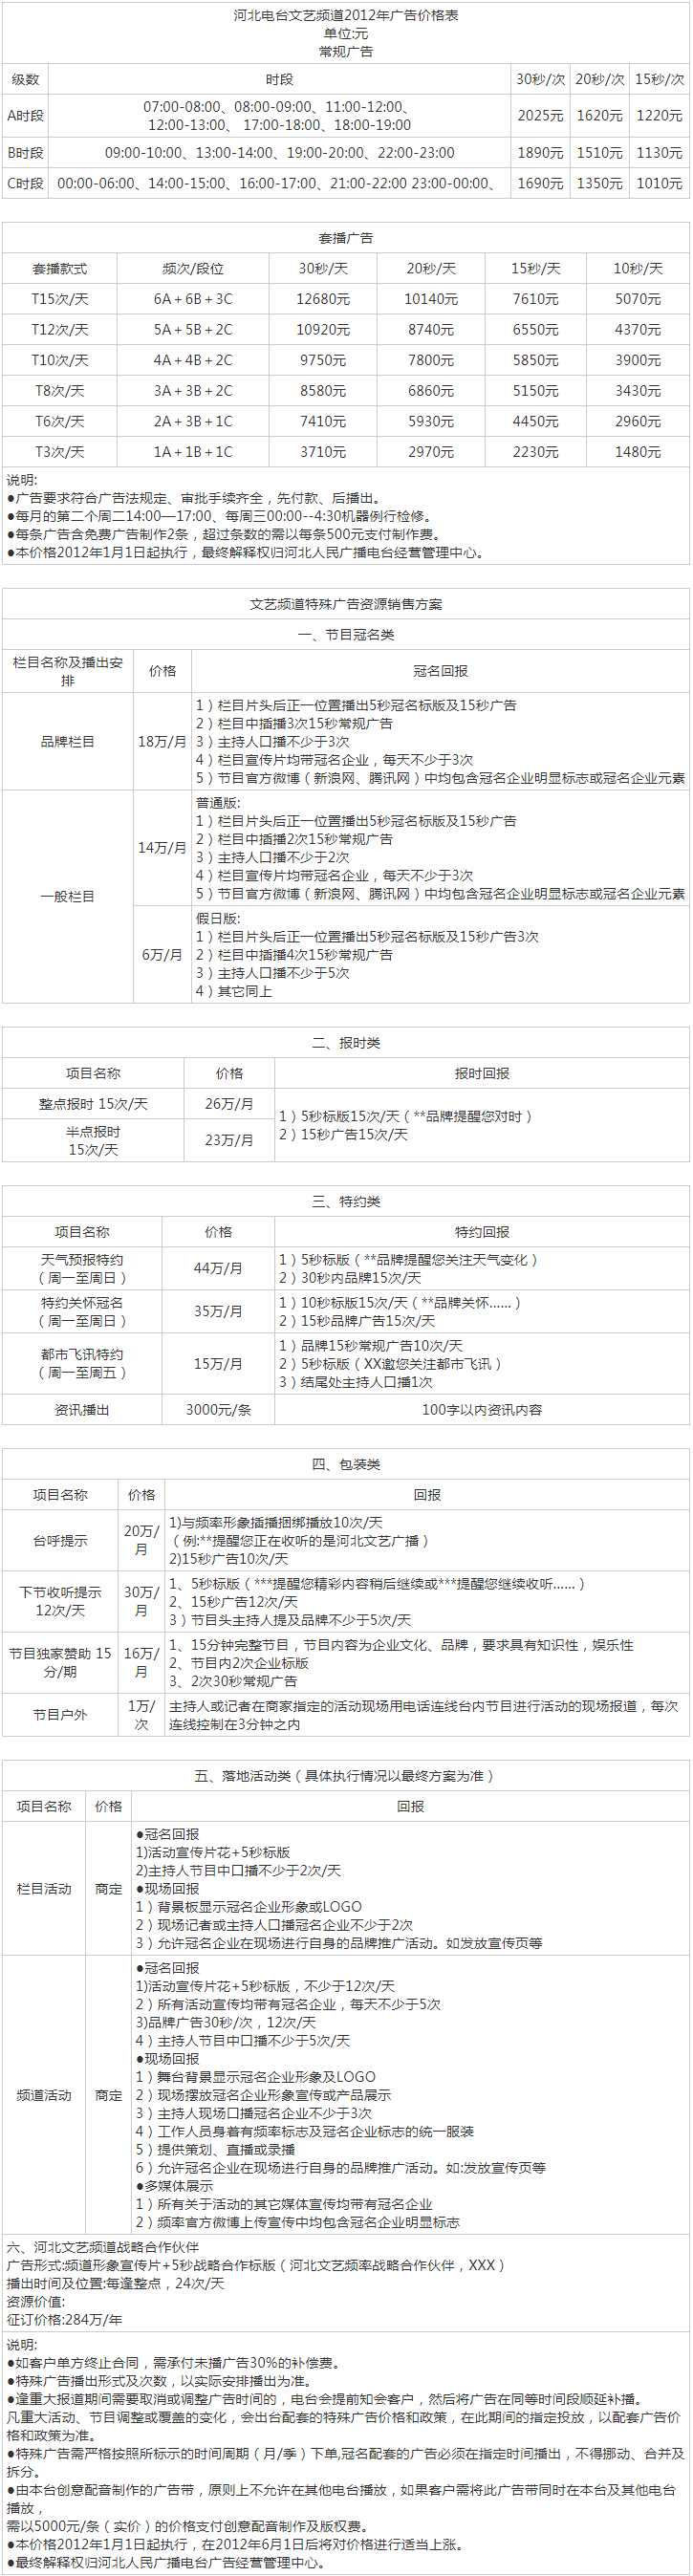 2012河北人民广播电台私家车文艺广播 FM90.7广告报价表.png